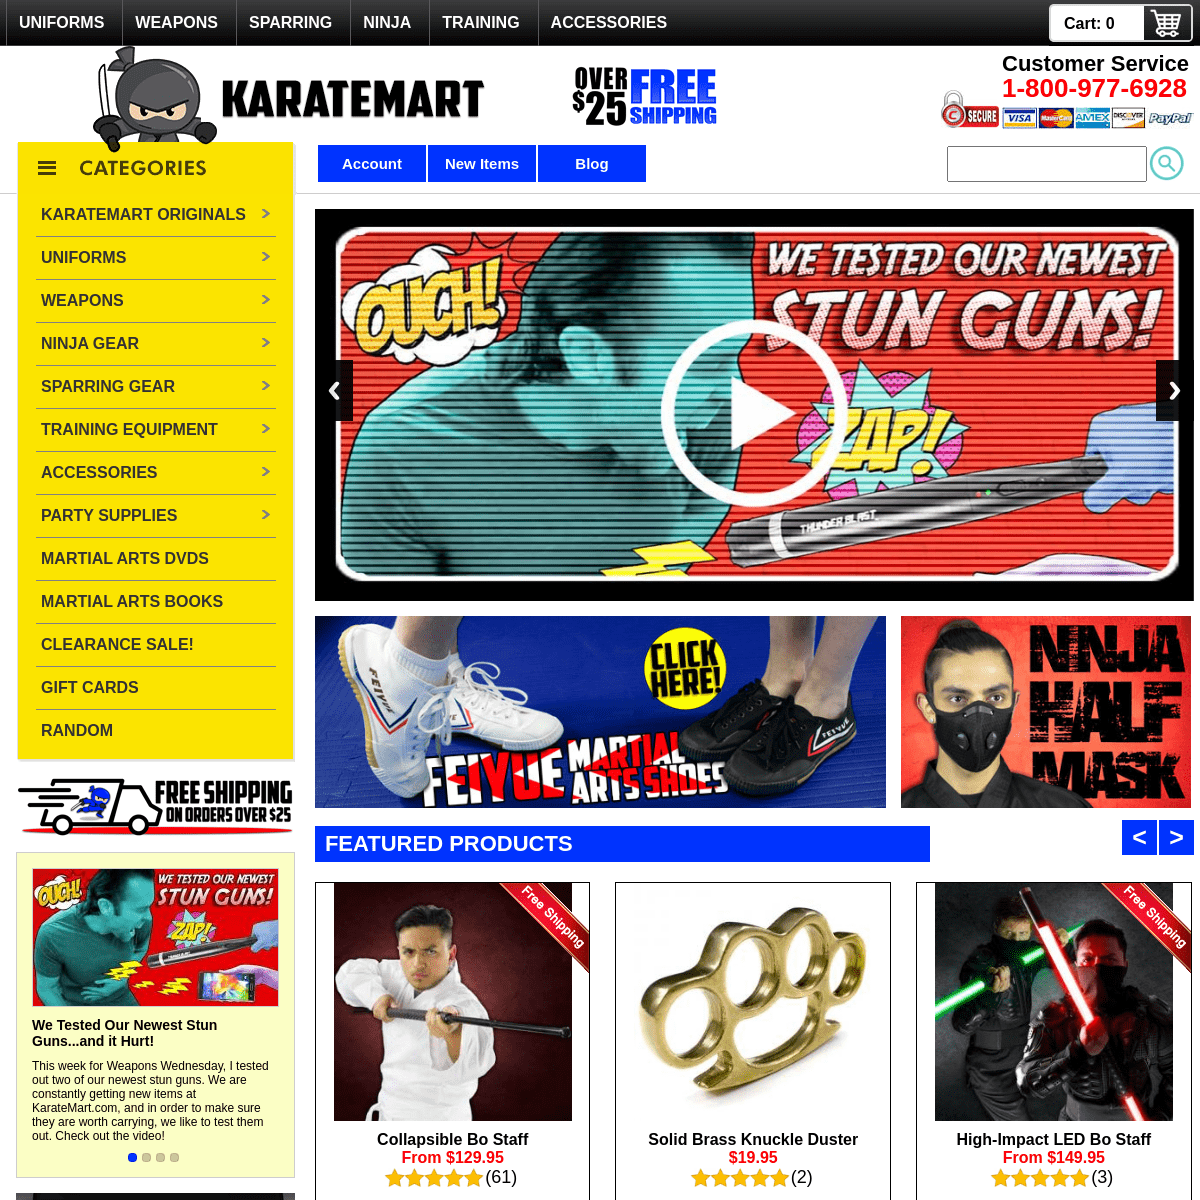 A complete backup of https://karatemart.com